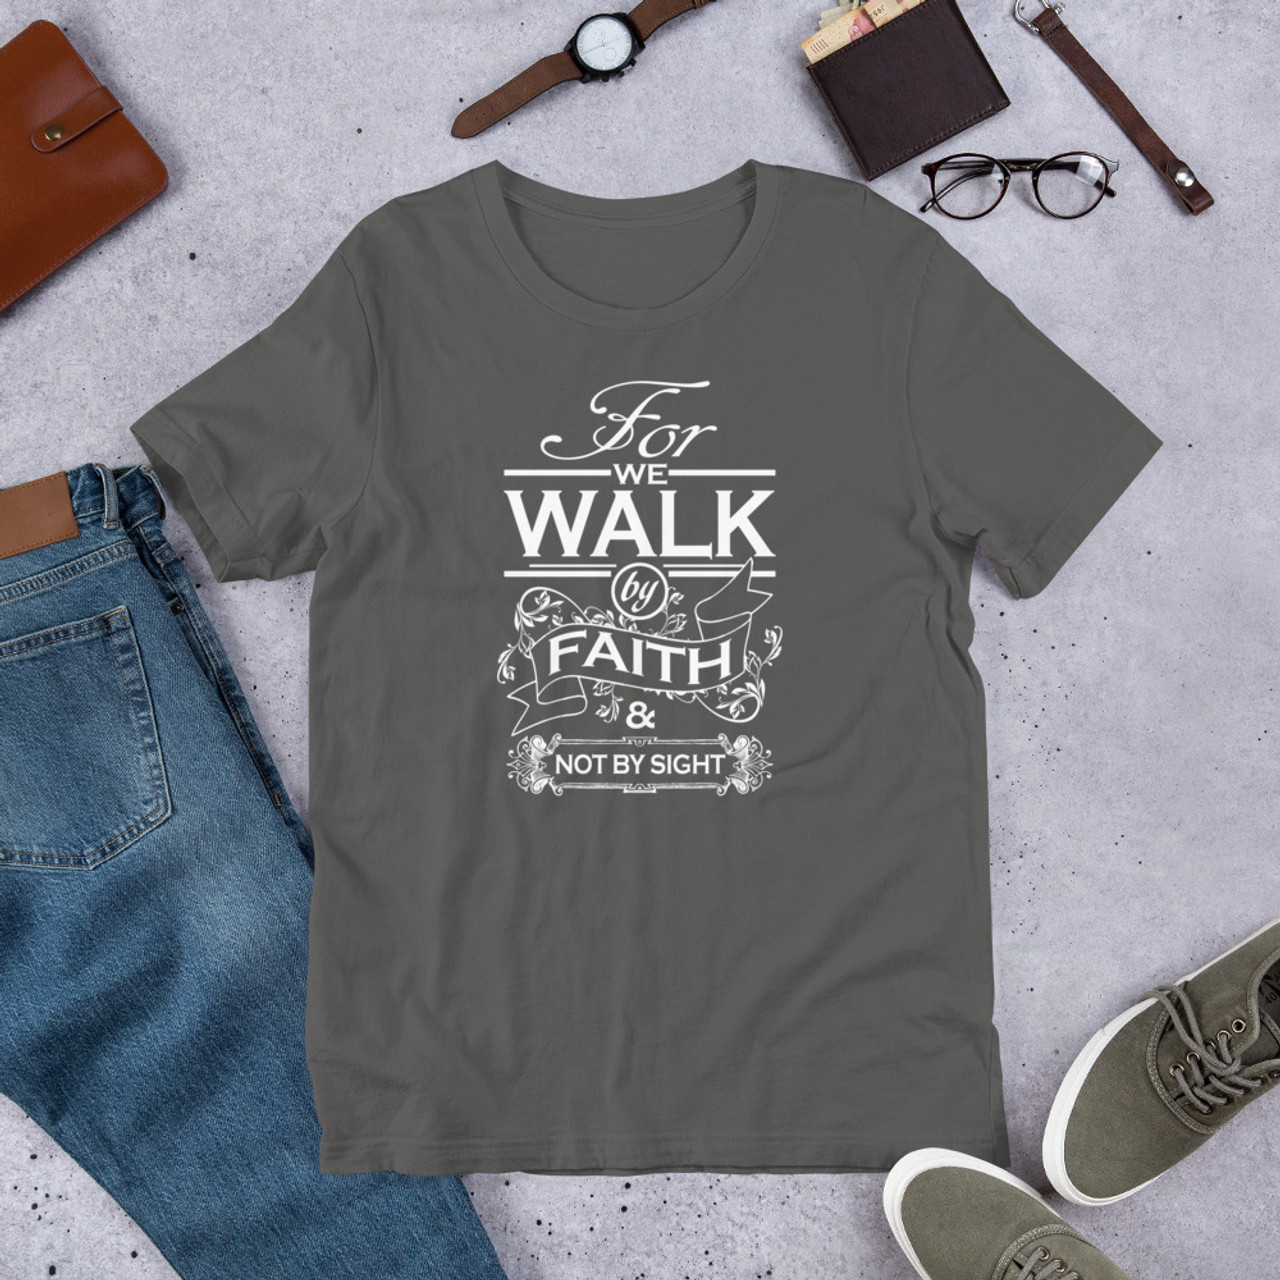 Asphalt T-Shirt - Bella + Canvas 3001 Walk By Faith